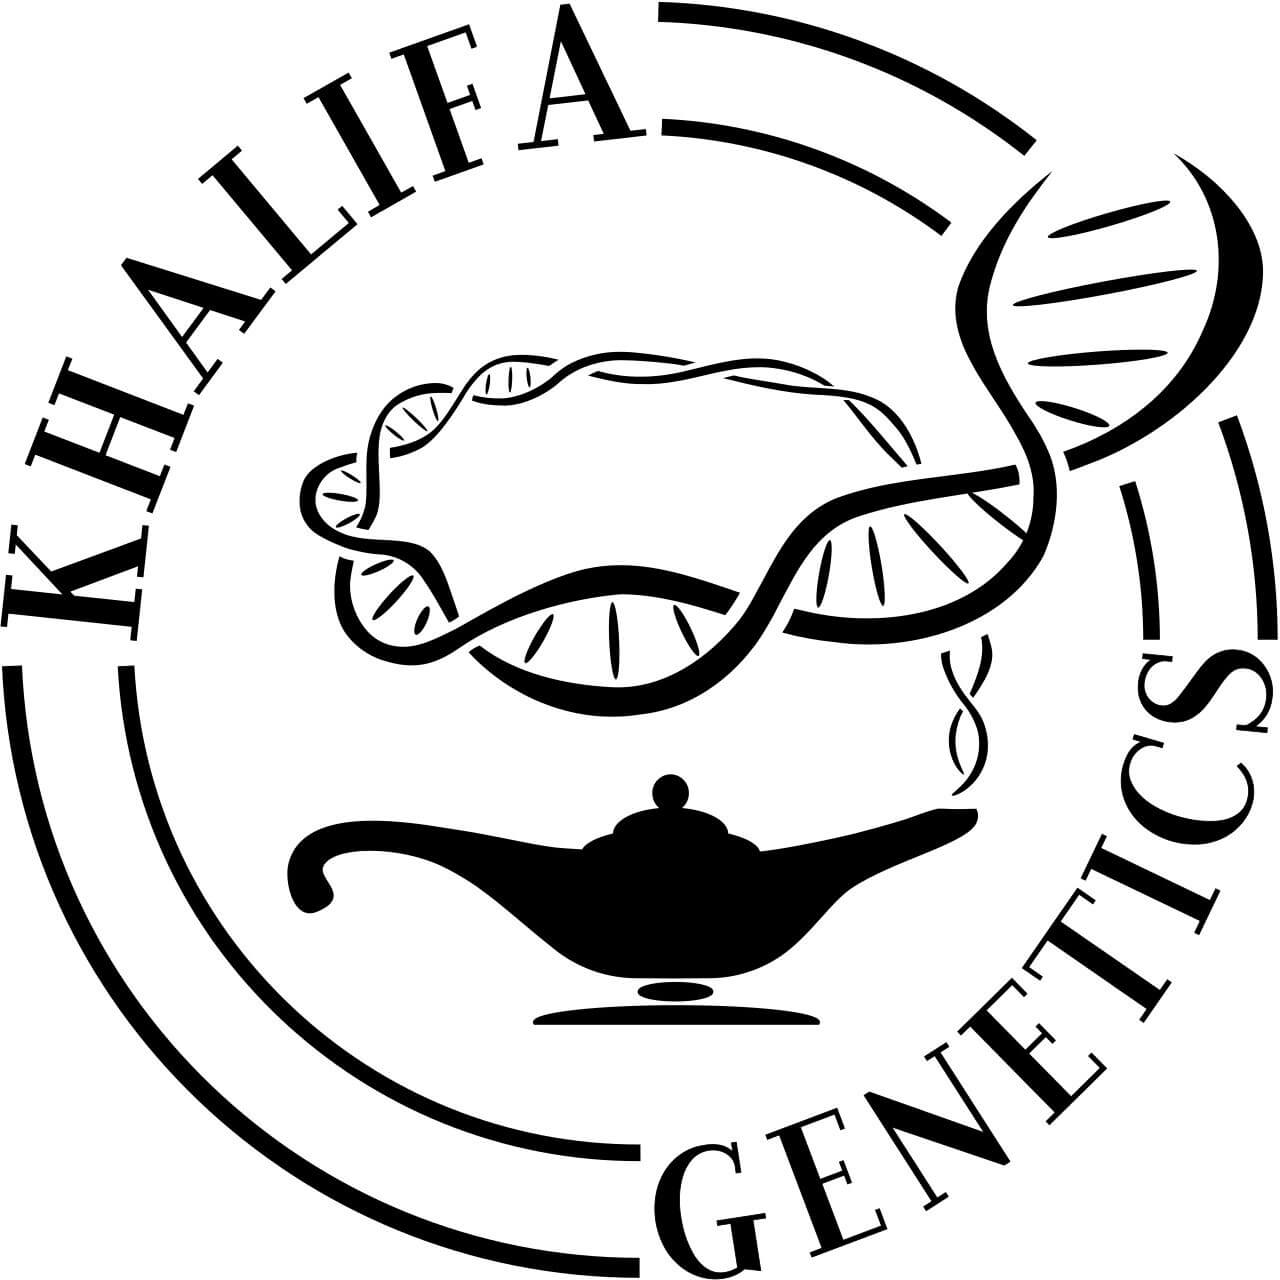 Khalifa Genetics, genética tradicional de gran calidad